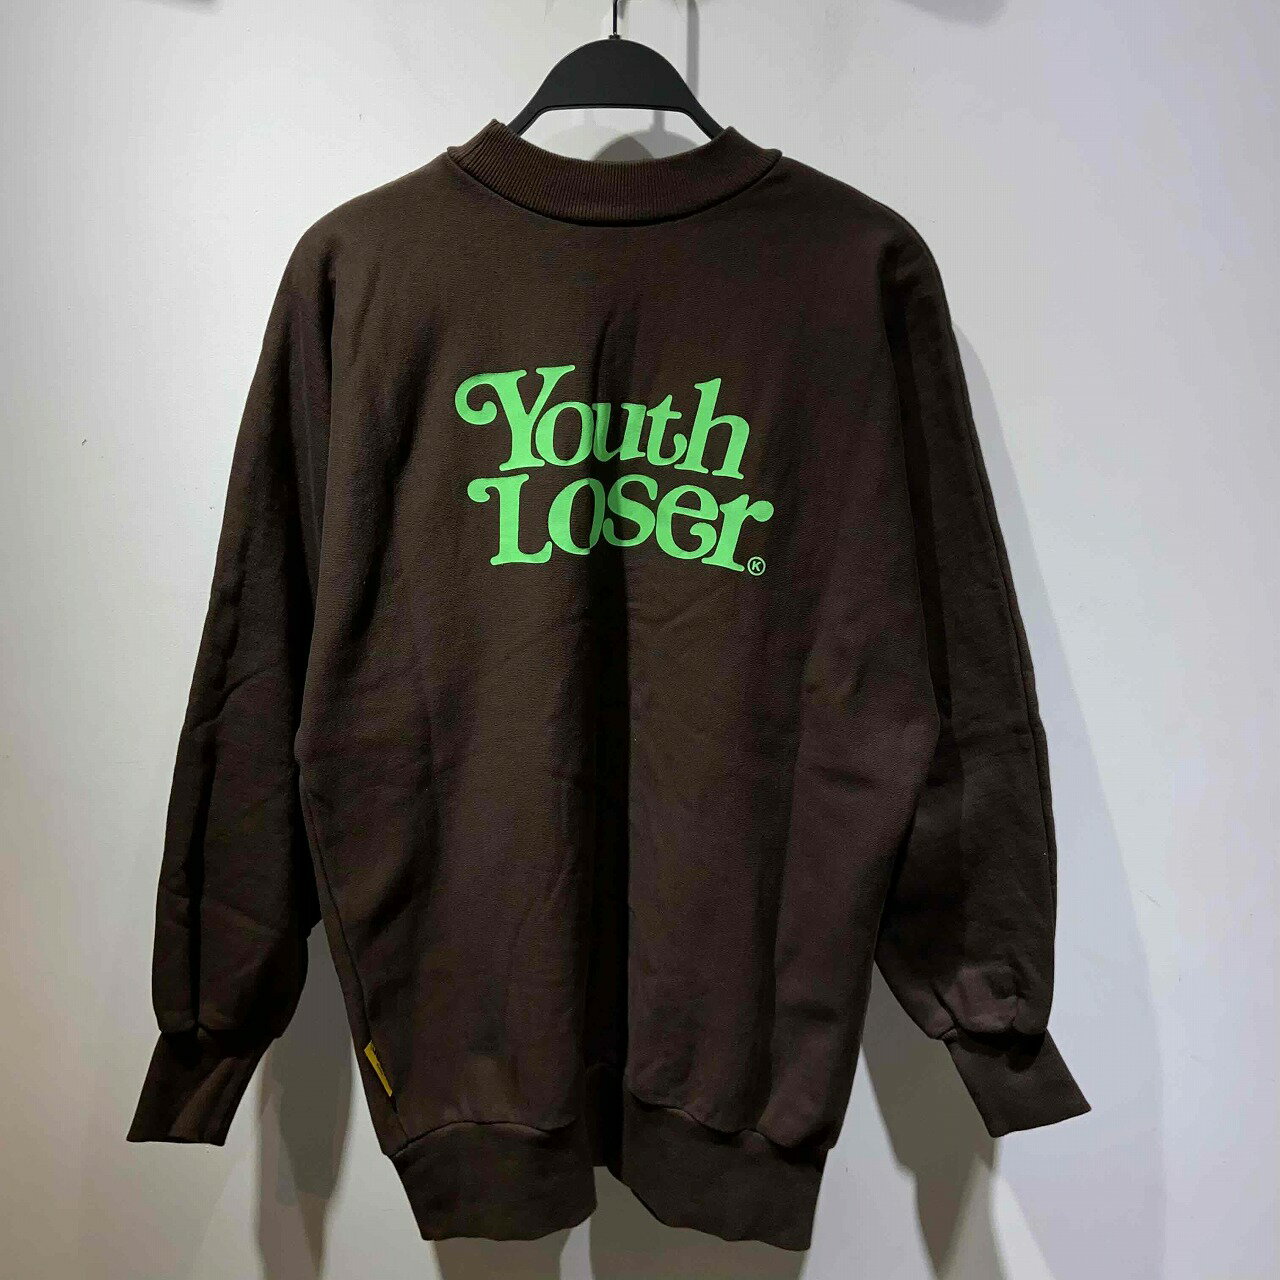 Youth Loser 1997 x VERDY LOGO SWEAT SHIRT ヴェルディー ユースルーザー スウェット クルーネック 心斎橋店【中古】